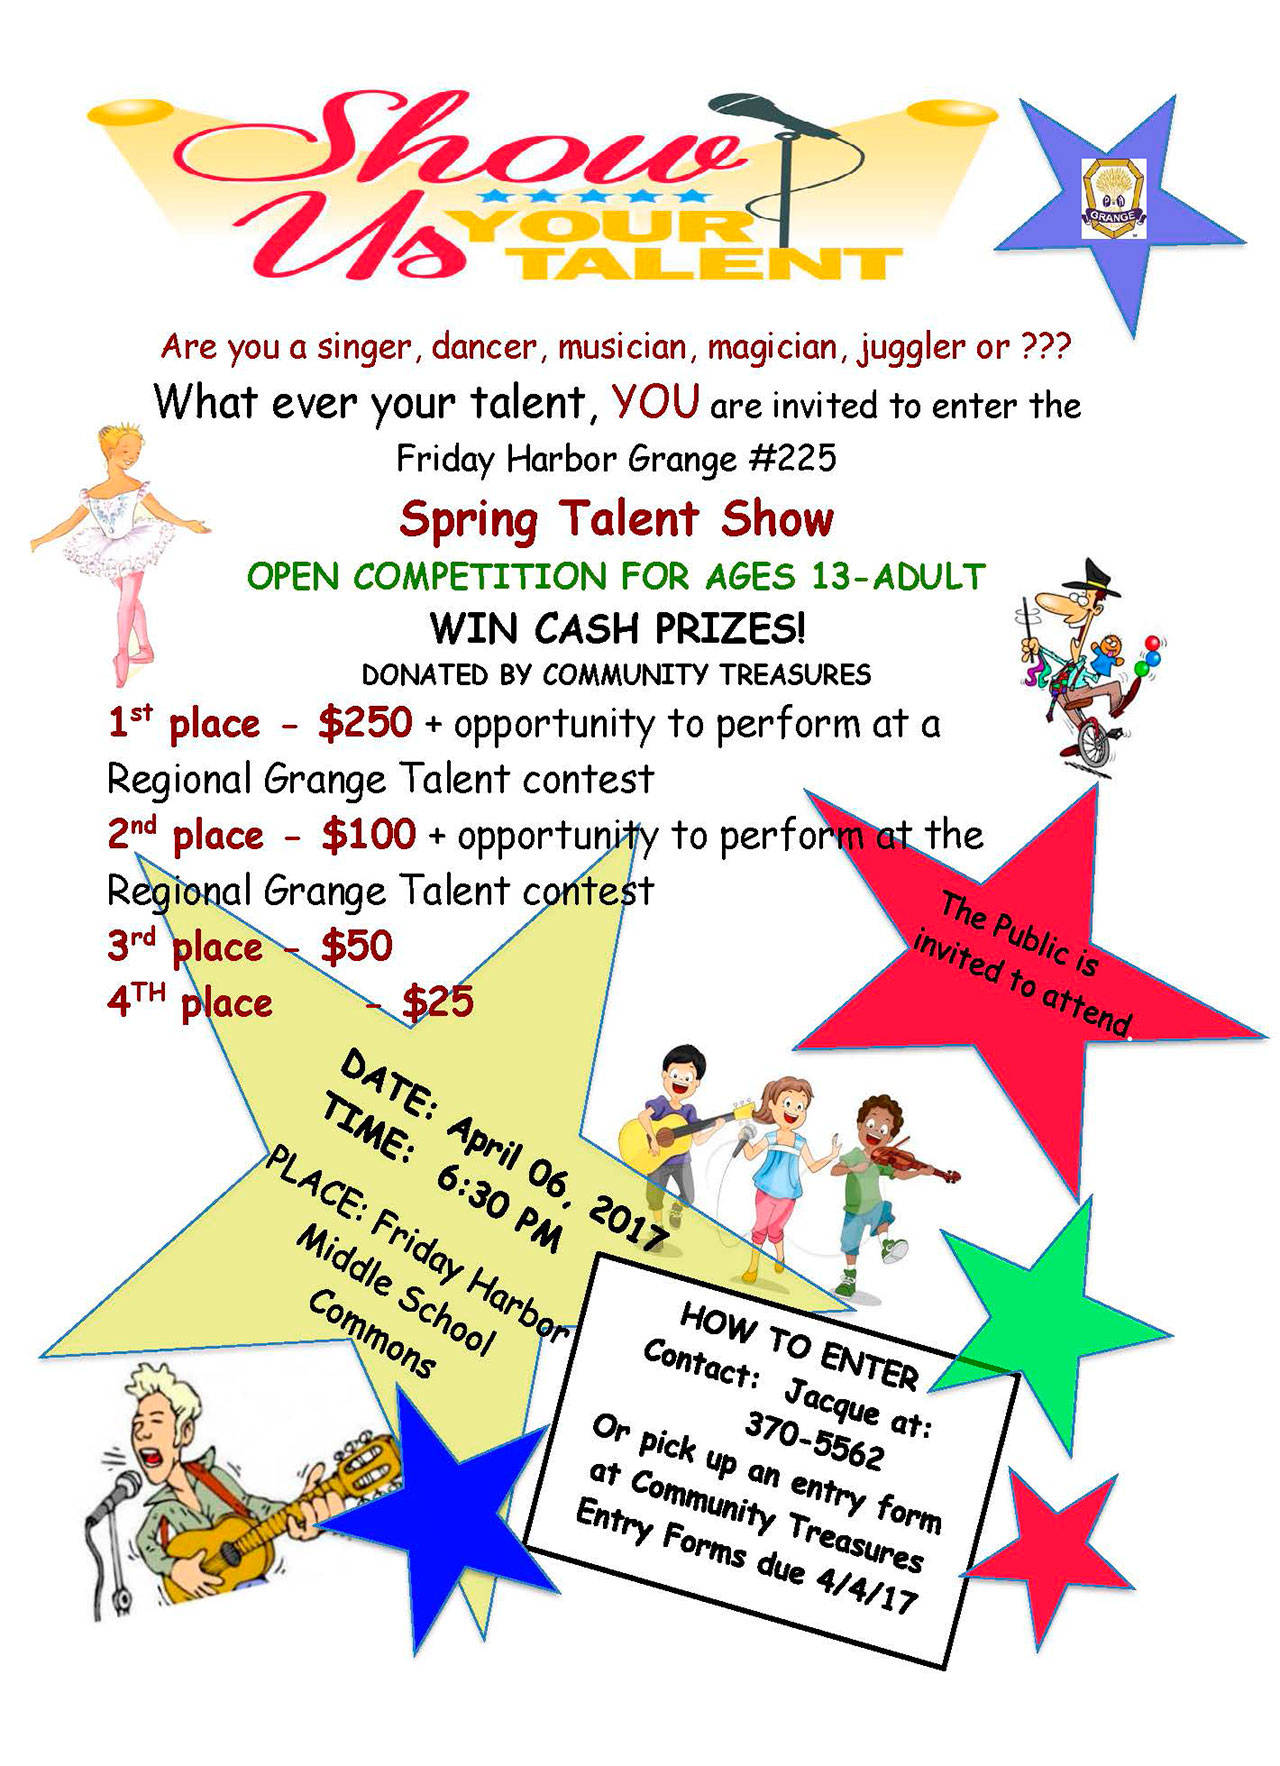 Enter Grange No. 225 talent show by April 4